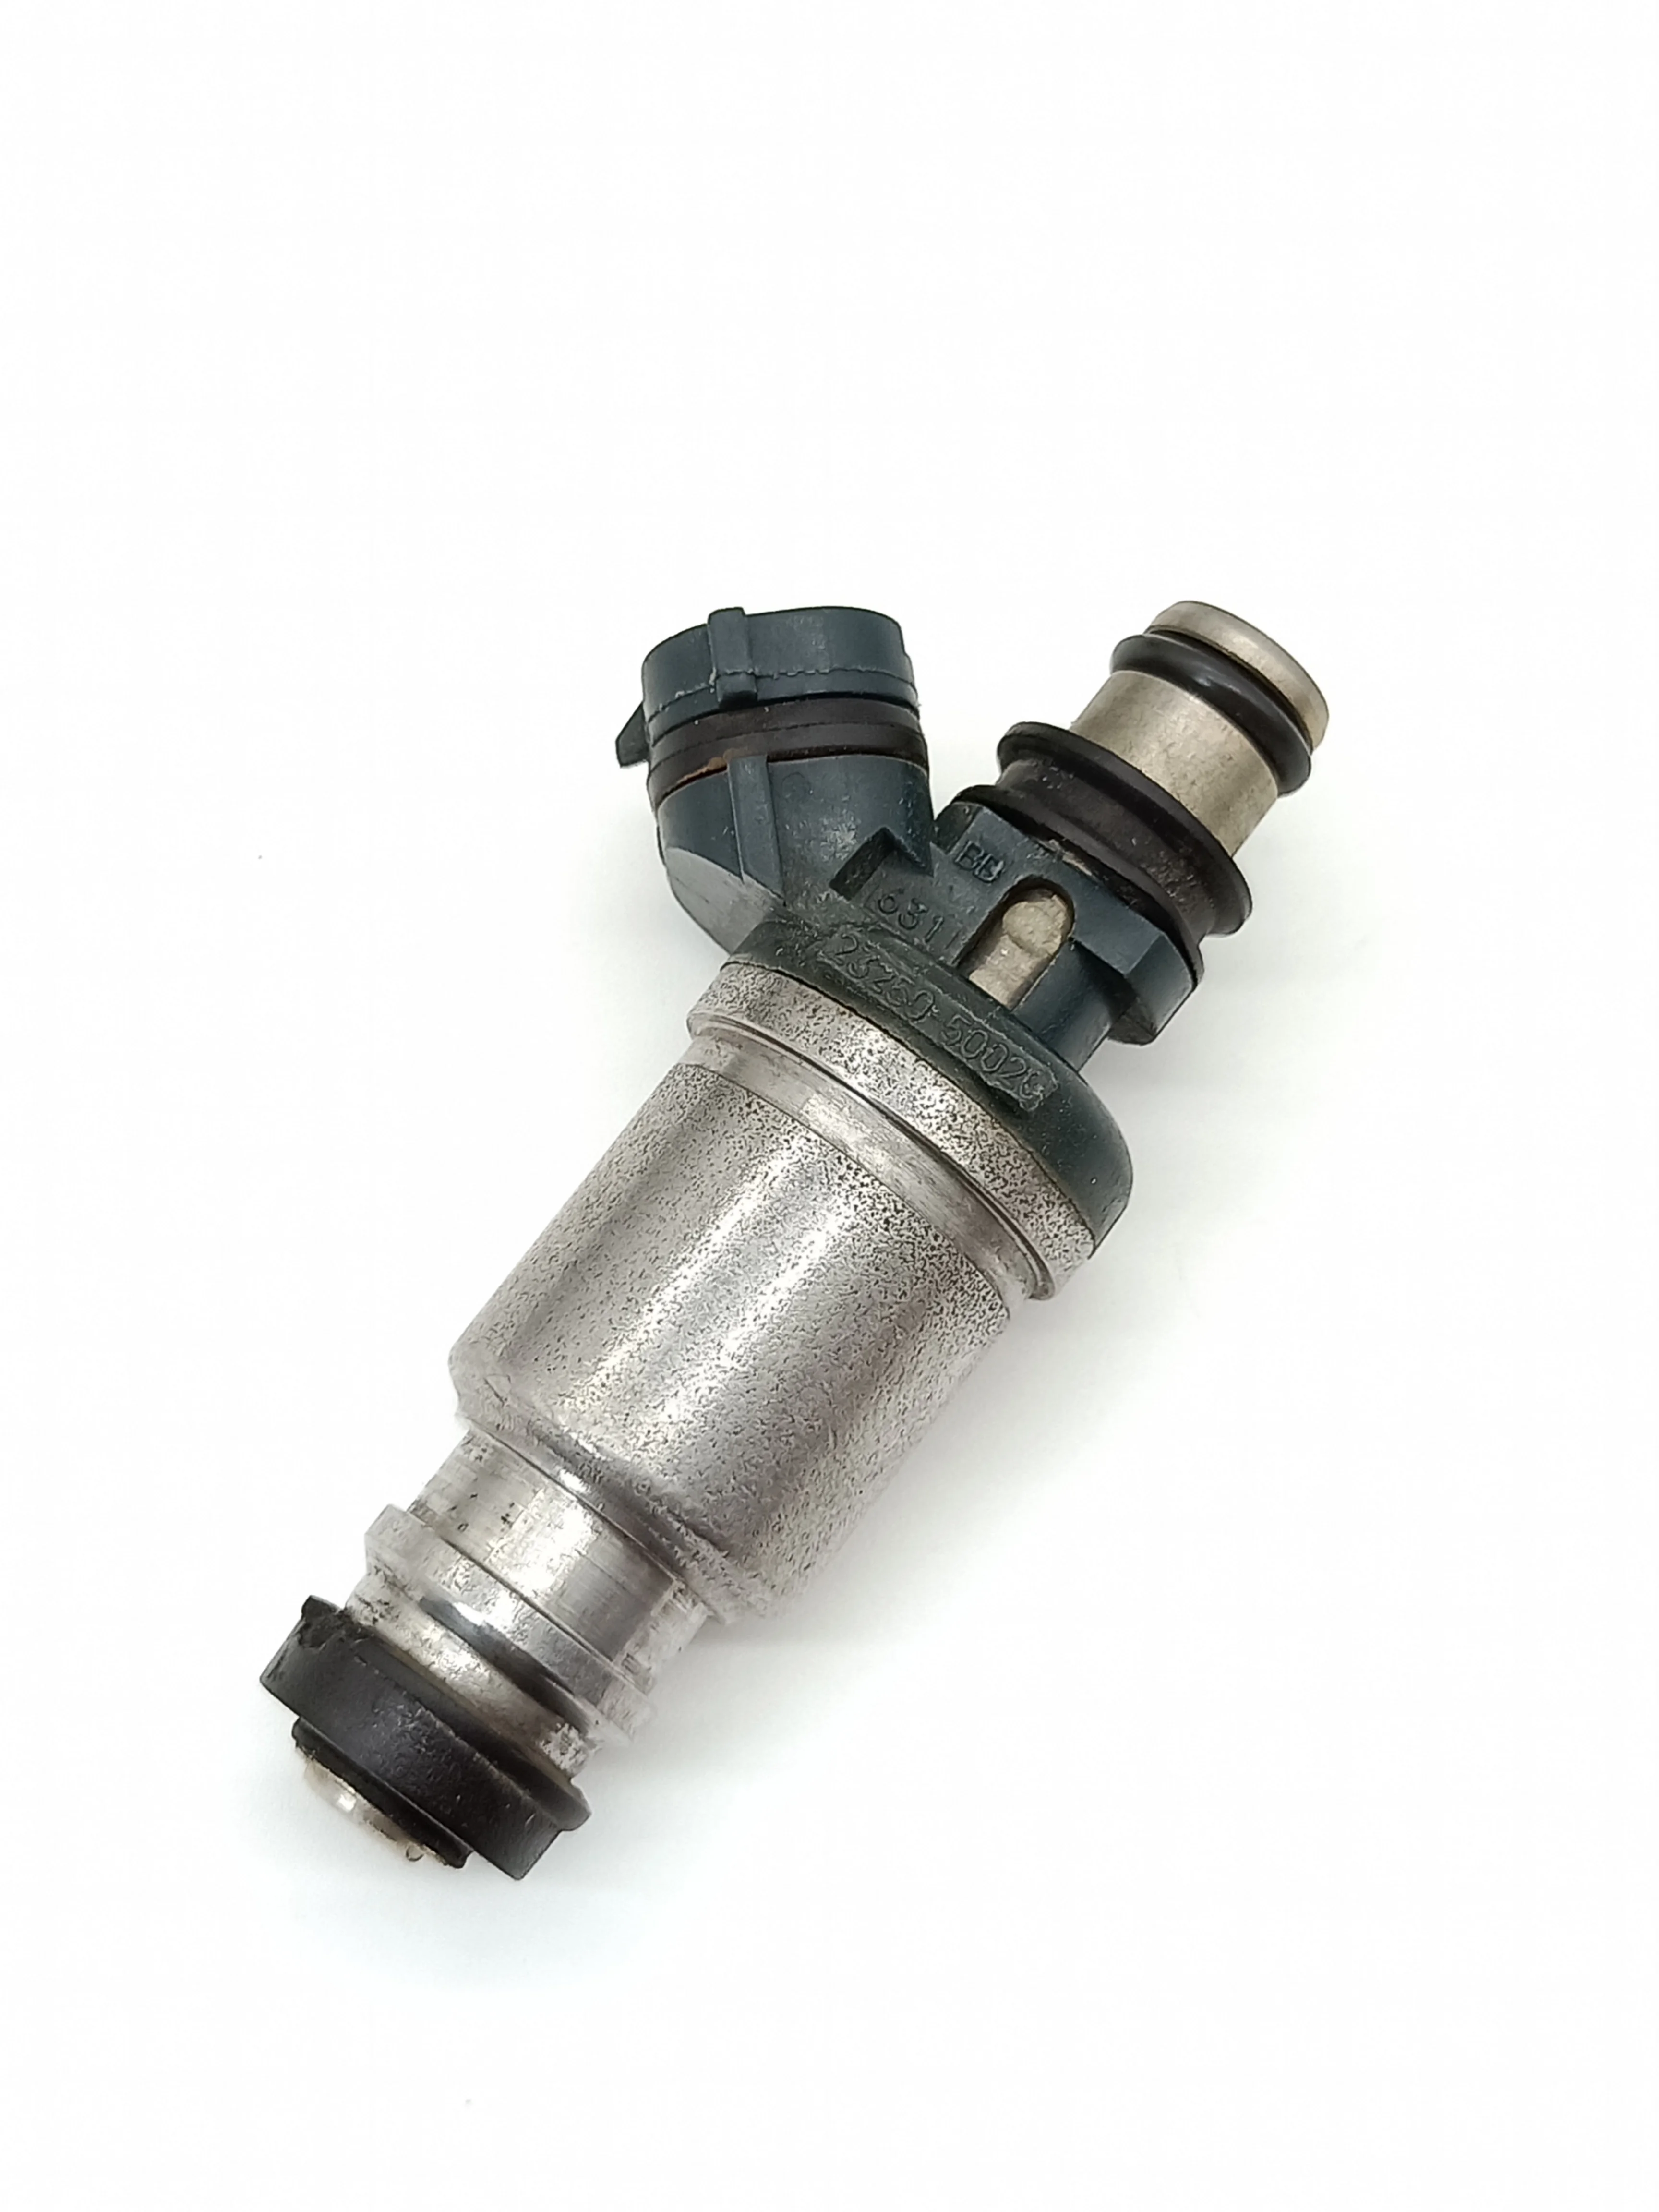 

1pc 23250-50020 23209-50020 new fuel injector nozzle for LEXUS-EU / General LS400 UCF10 89~94 LS400 UCF20 94~00 4.0L 1UZFE